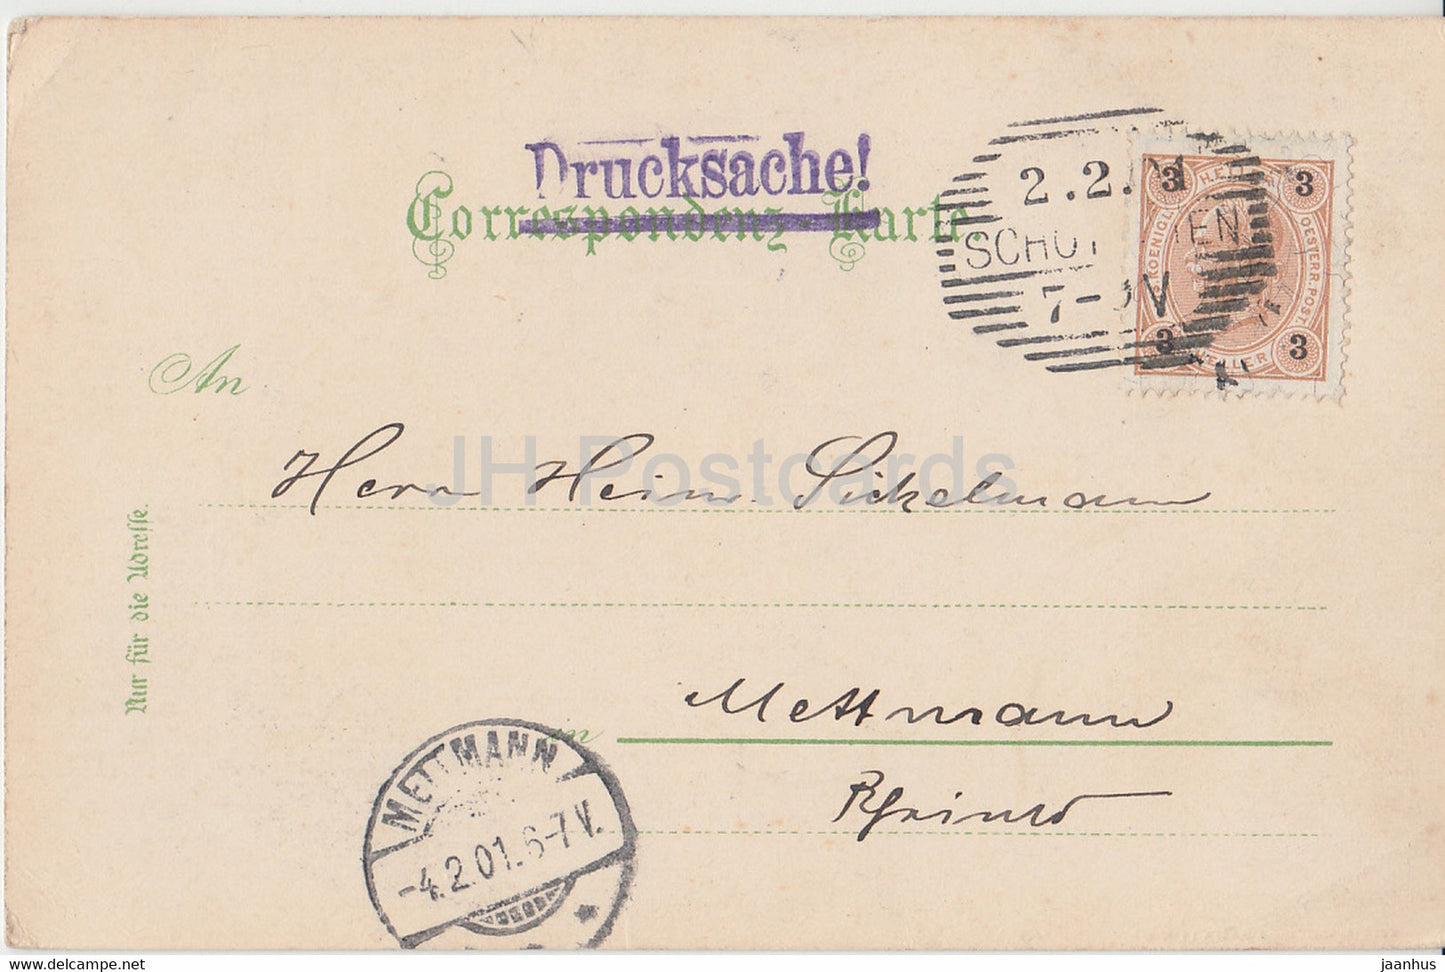 Gruss aus dem Semmering Gebiet - Der Jagergraben - Drucksache - old postcard - 1901 - Austria - used